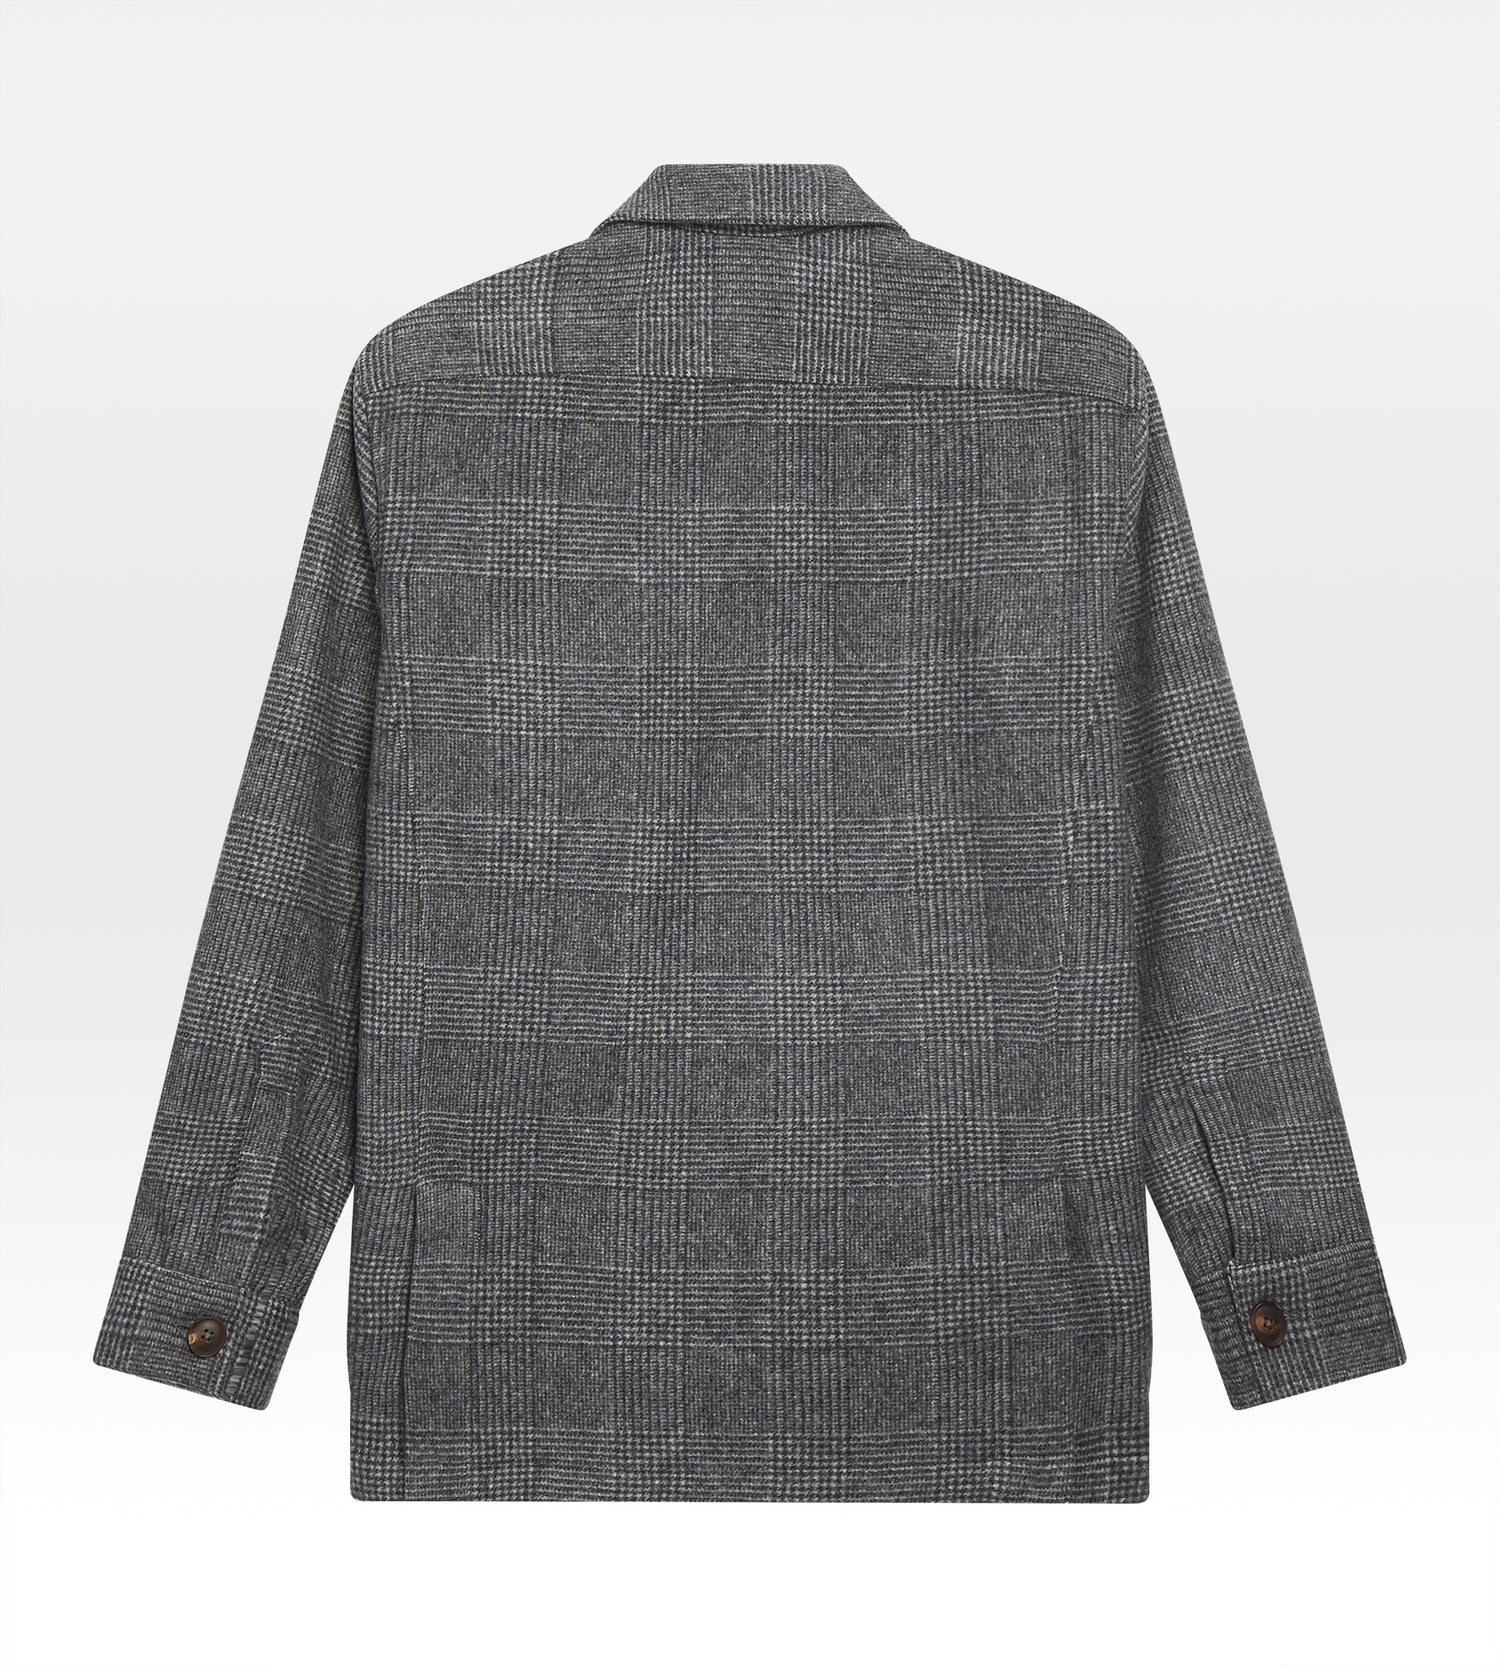 Sur-chemise en laine gris motif Prince-de-Galles